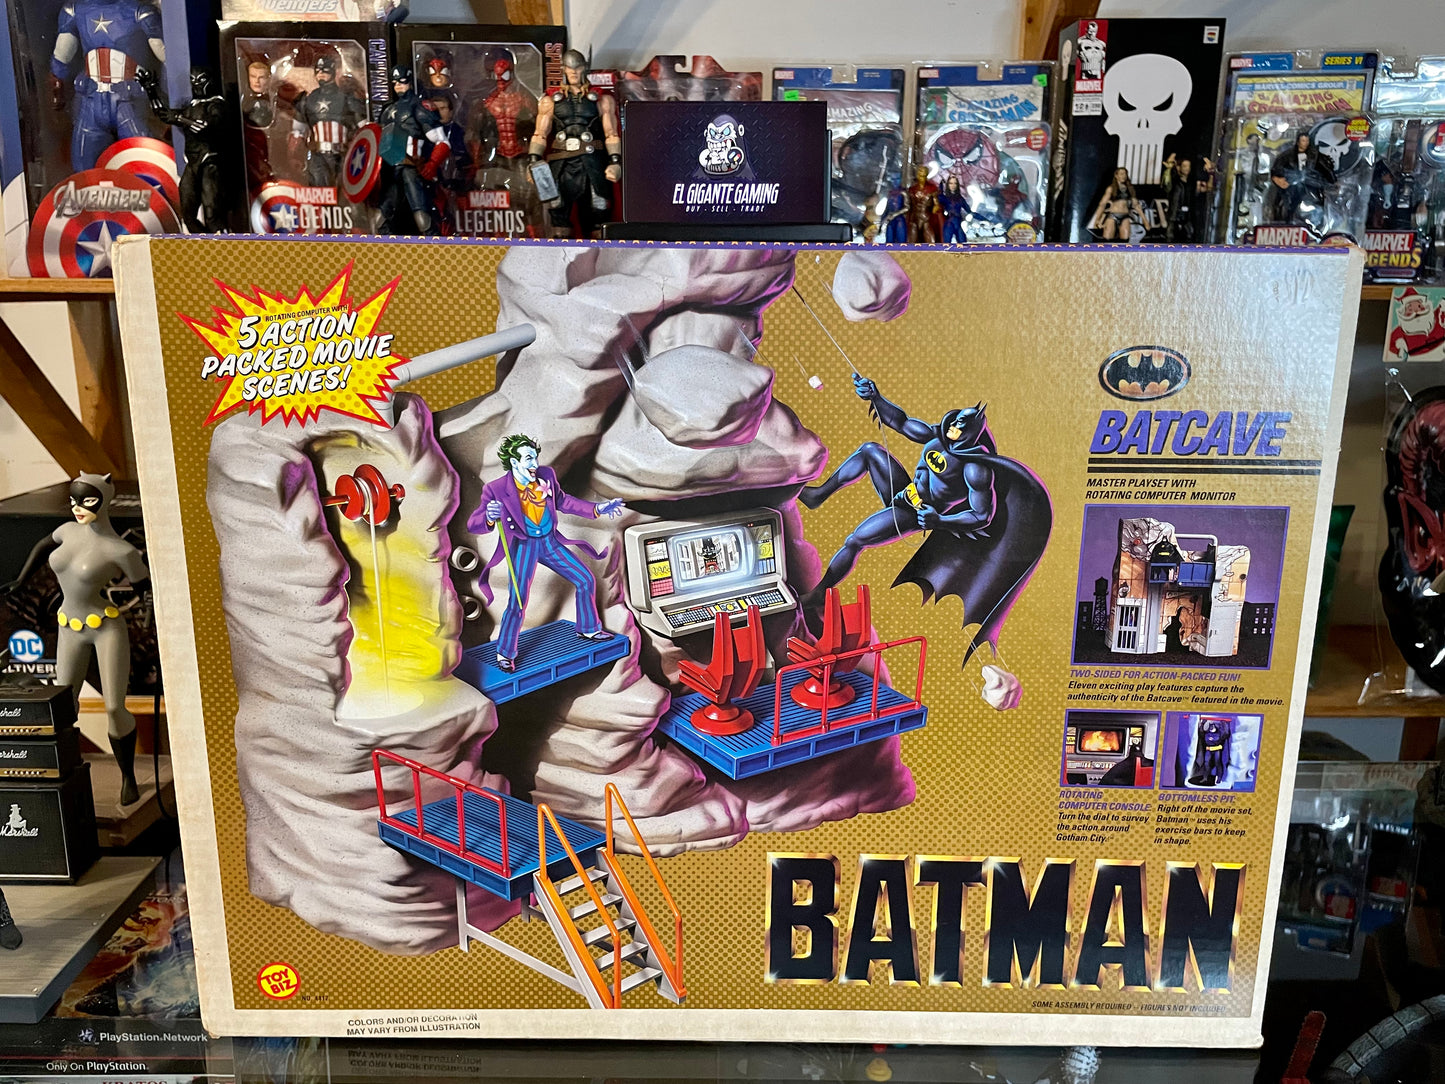 Batman Batcave Master Playset Toybiz 1989 on